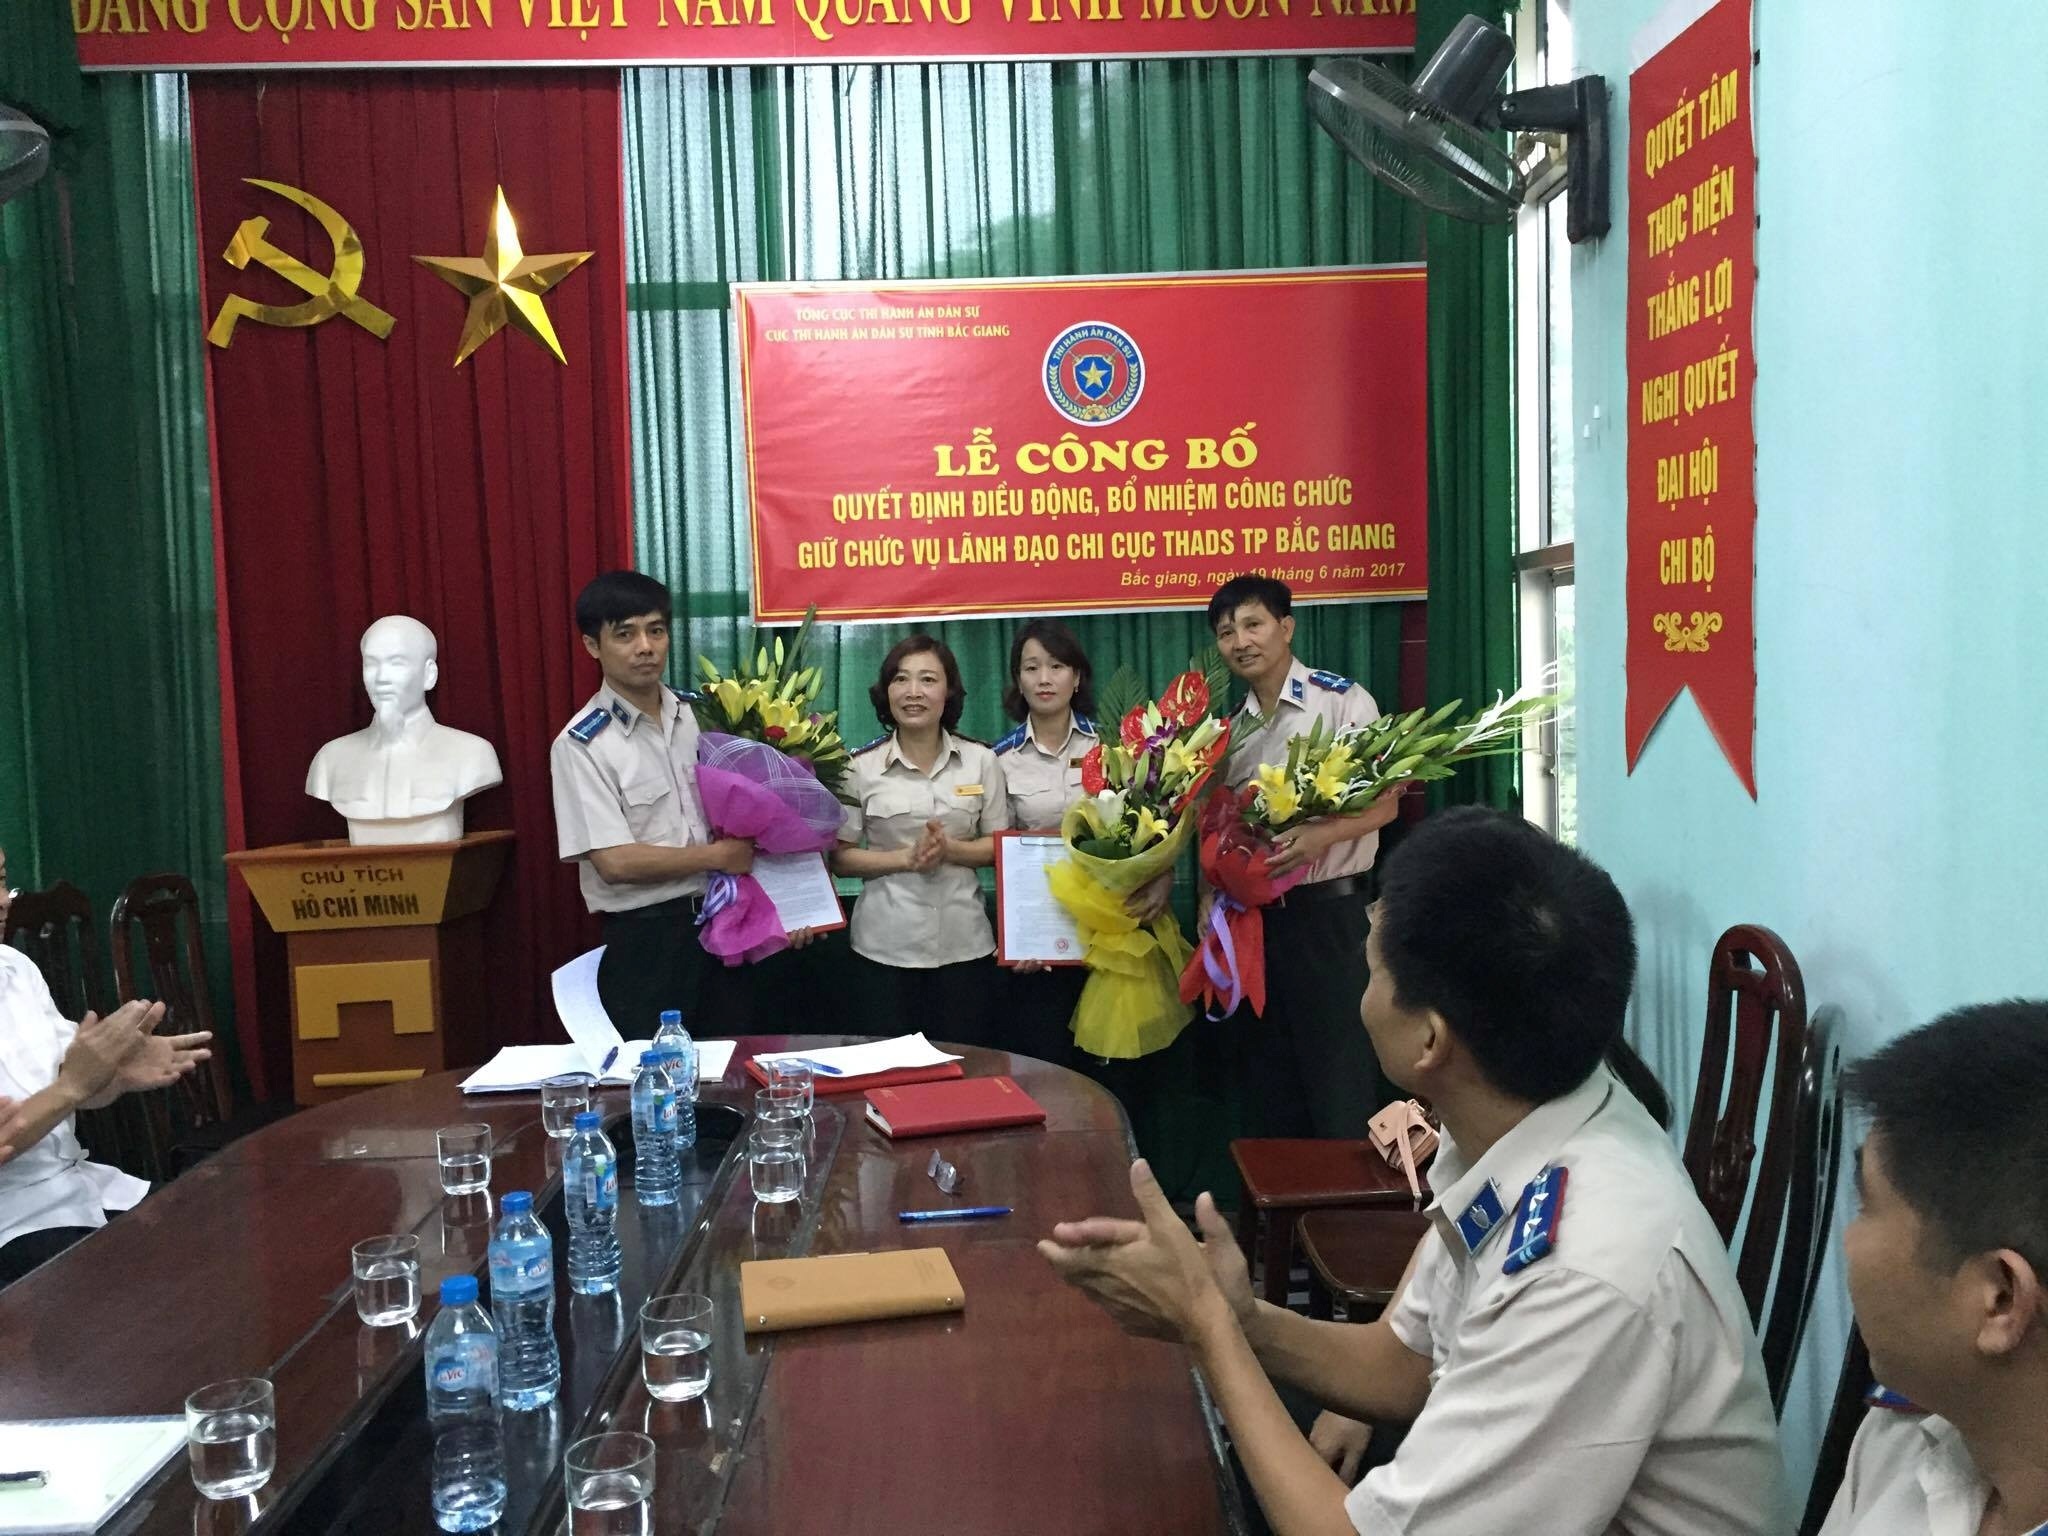 Lễ công bố quyết định điều động, bổ nhiệm công chức giữ chức vụ lãnh đạo Chi cục THADS thành phố Bắc Giang